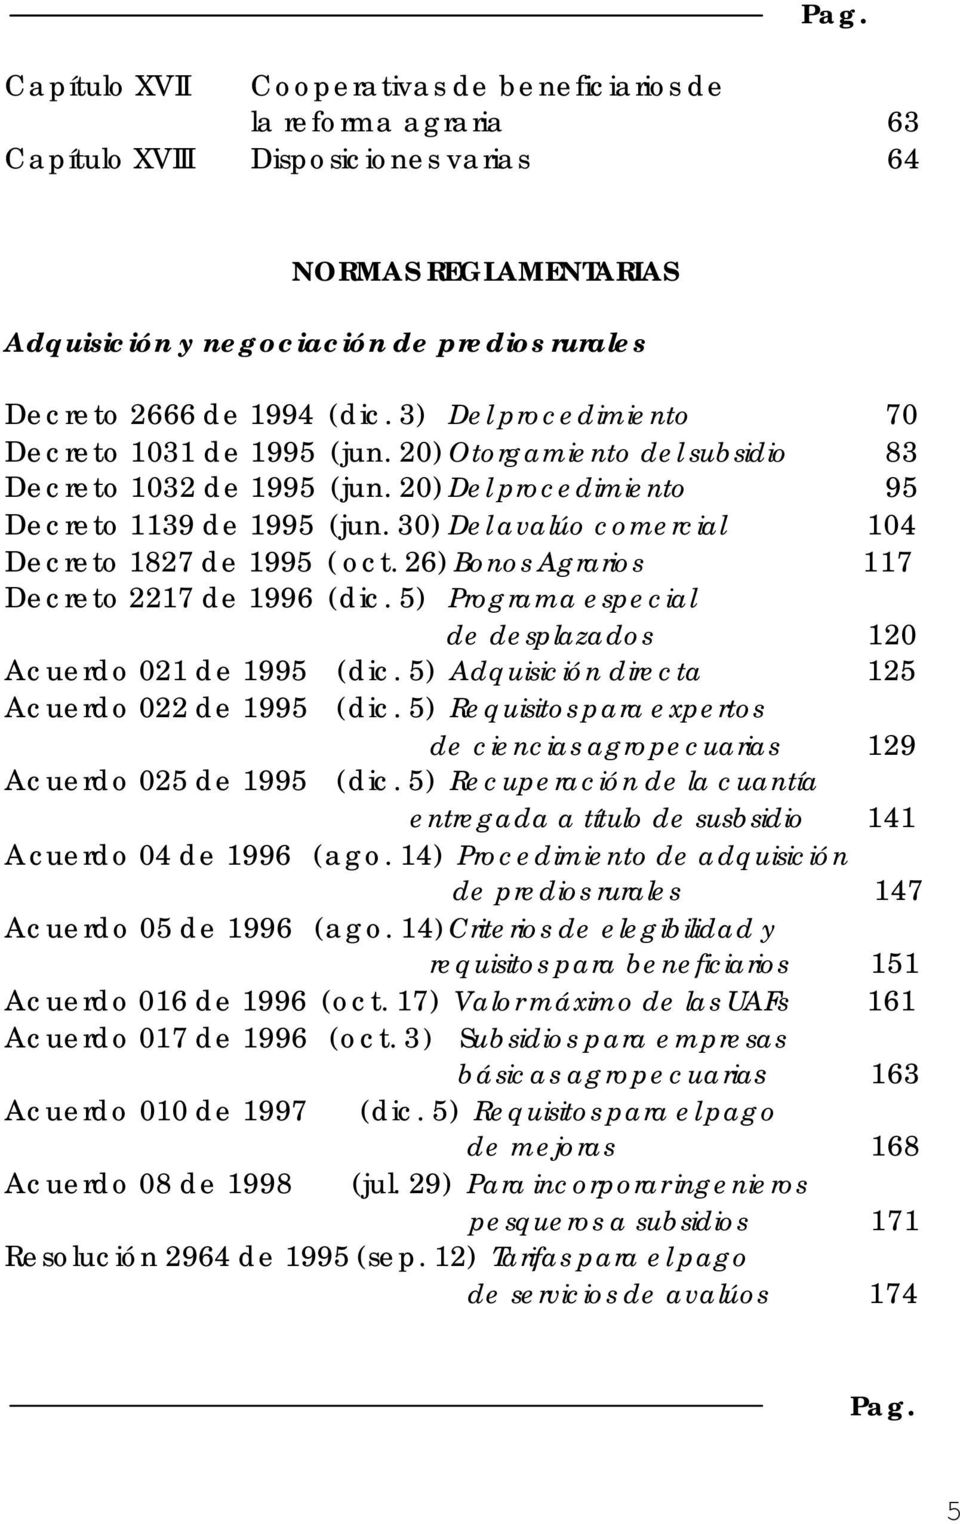 30) Del avalúo comercial 104 Decreto 1827 de 1995 (oct. 26) Bonos Agrarios 117 Decreto 2217 de 1996 (dic. 5) Programa especial de desplazados 120 Acuerdo 021 de 1995 (dic.